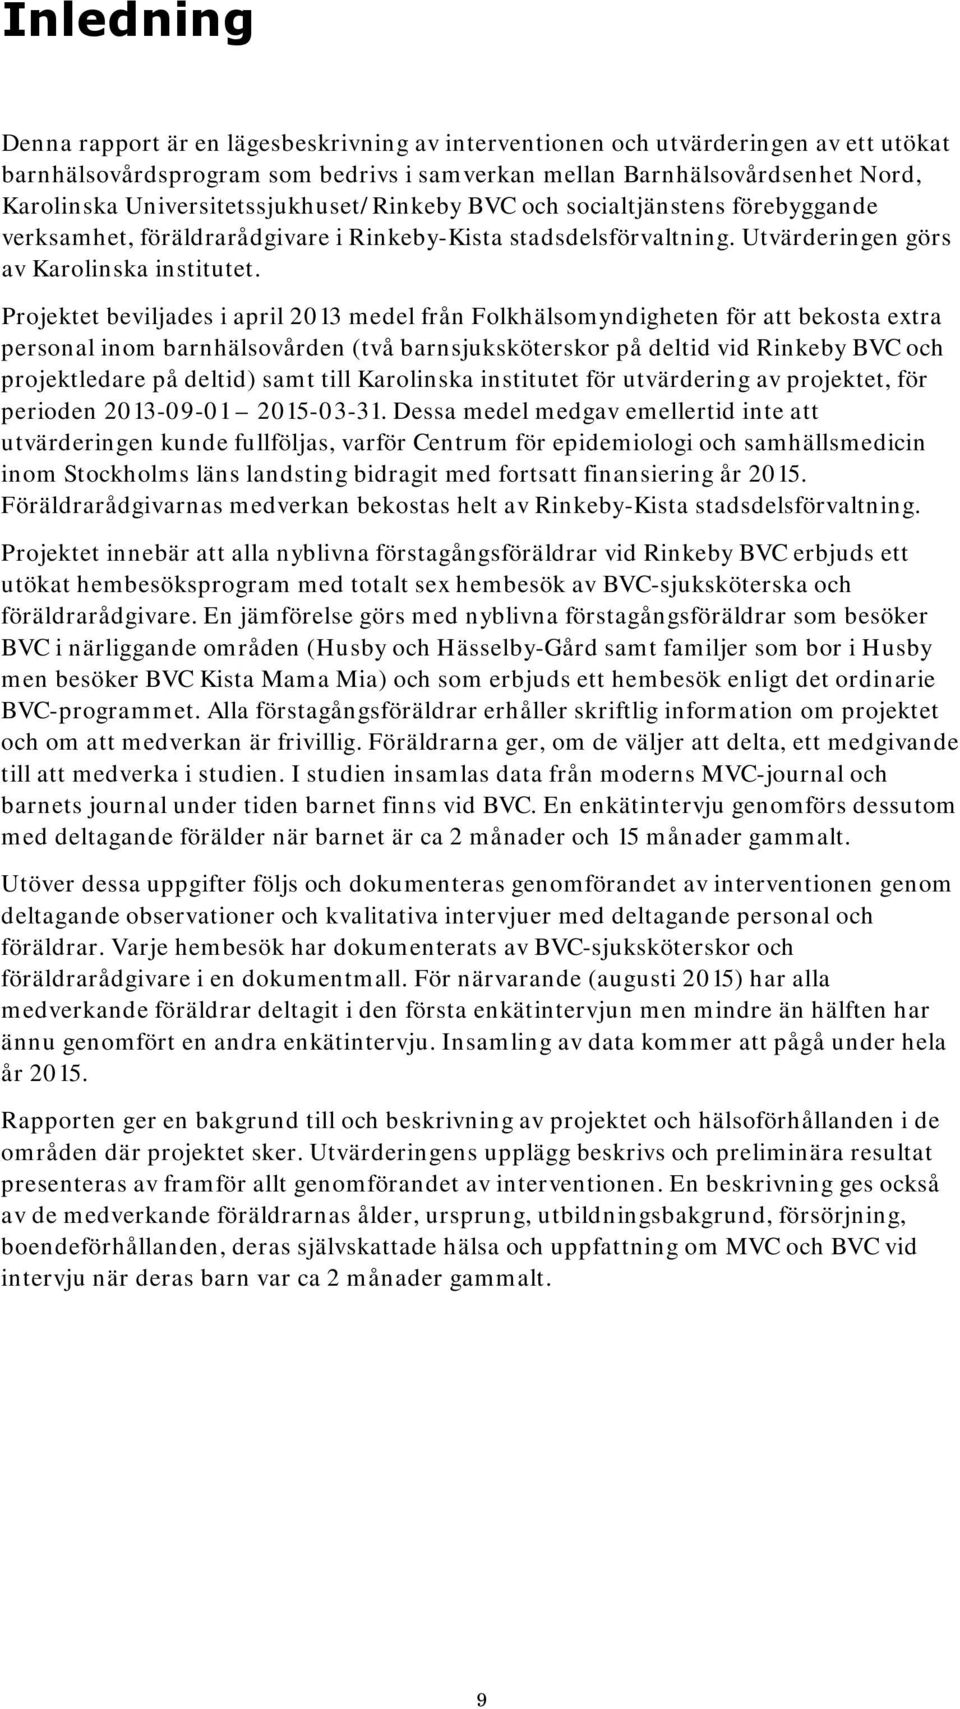 Projektet beviljades i april 2013 medel från Folkhälsomyndigheten för att bekosta extra personal inom barnhälsovården (två barnsjuksköterskor på deltid vid Rinkeby BVC och projektledare på deltid)